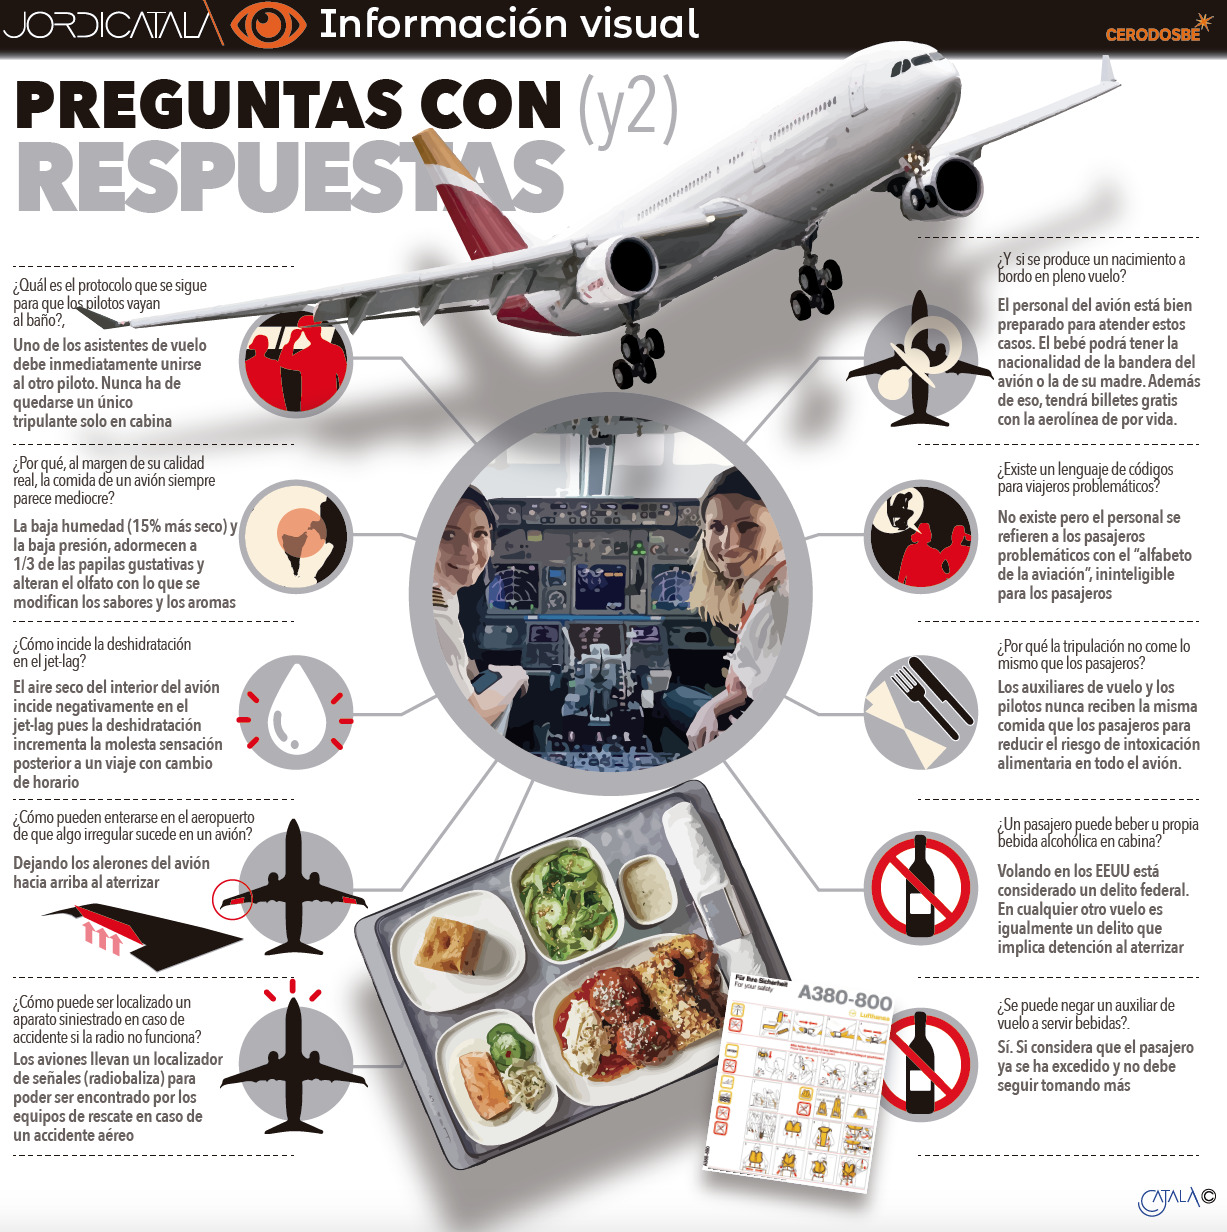 Preguntas y respuestas sobre el funcionamiento de los vuelos en aviÃ³n. Autor: Jordi CatalÃ 